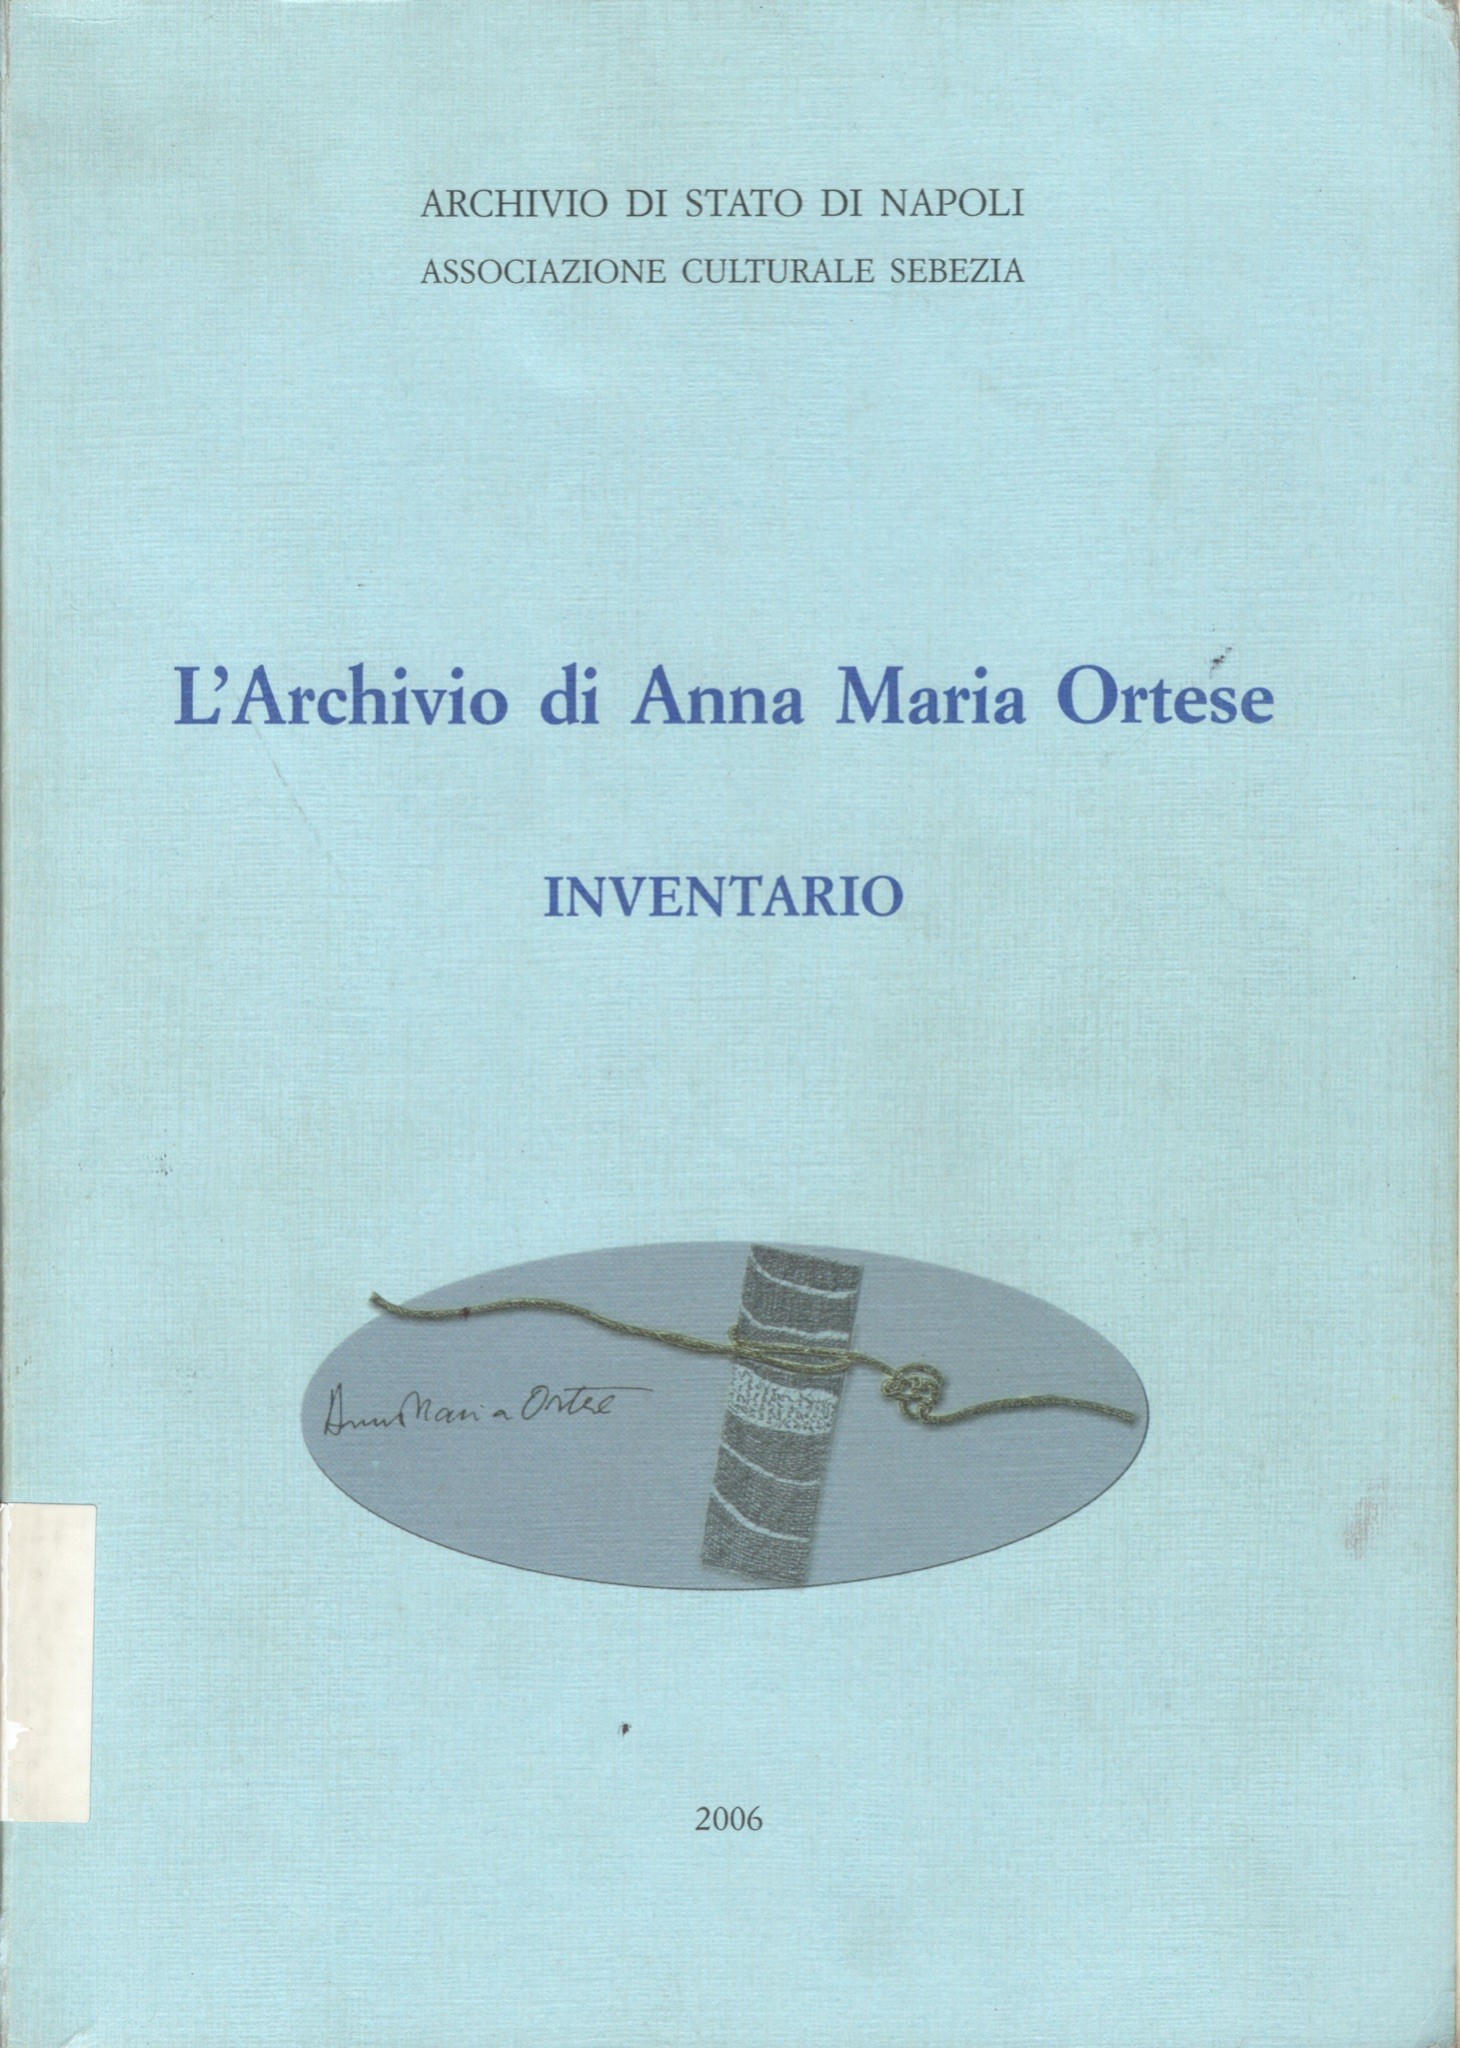 Frontespizio de L'Archivio di Anna Maria Ortese.